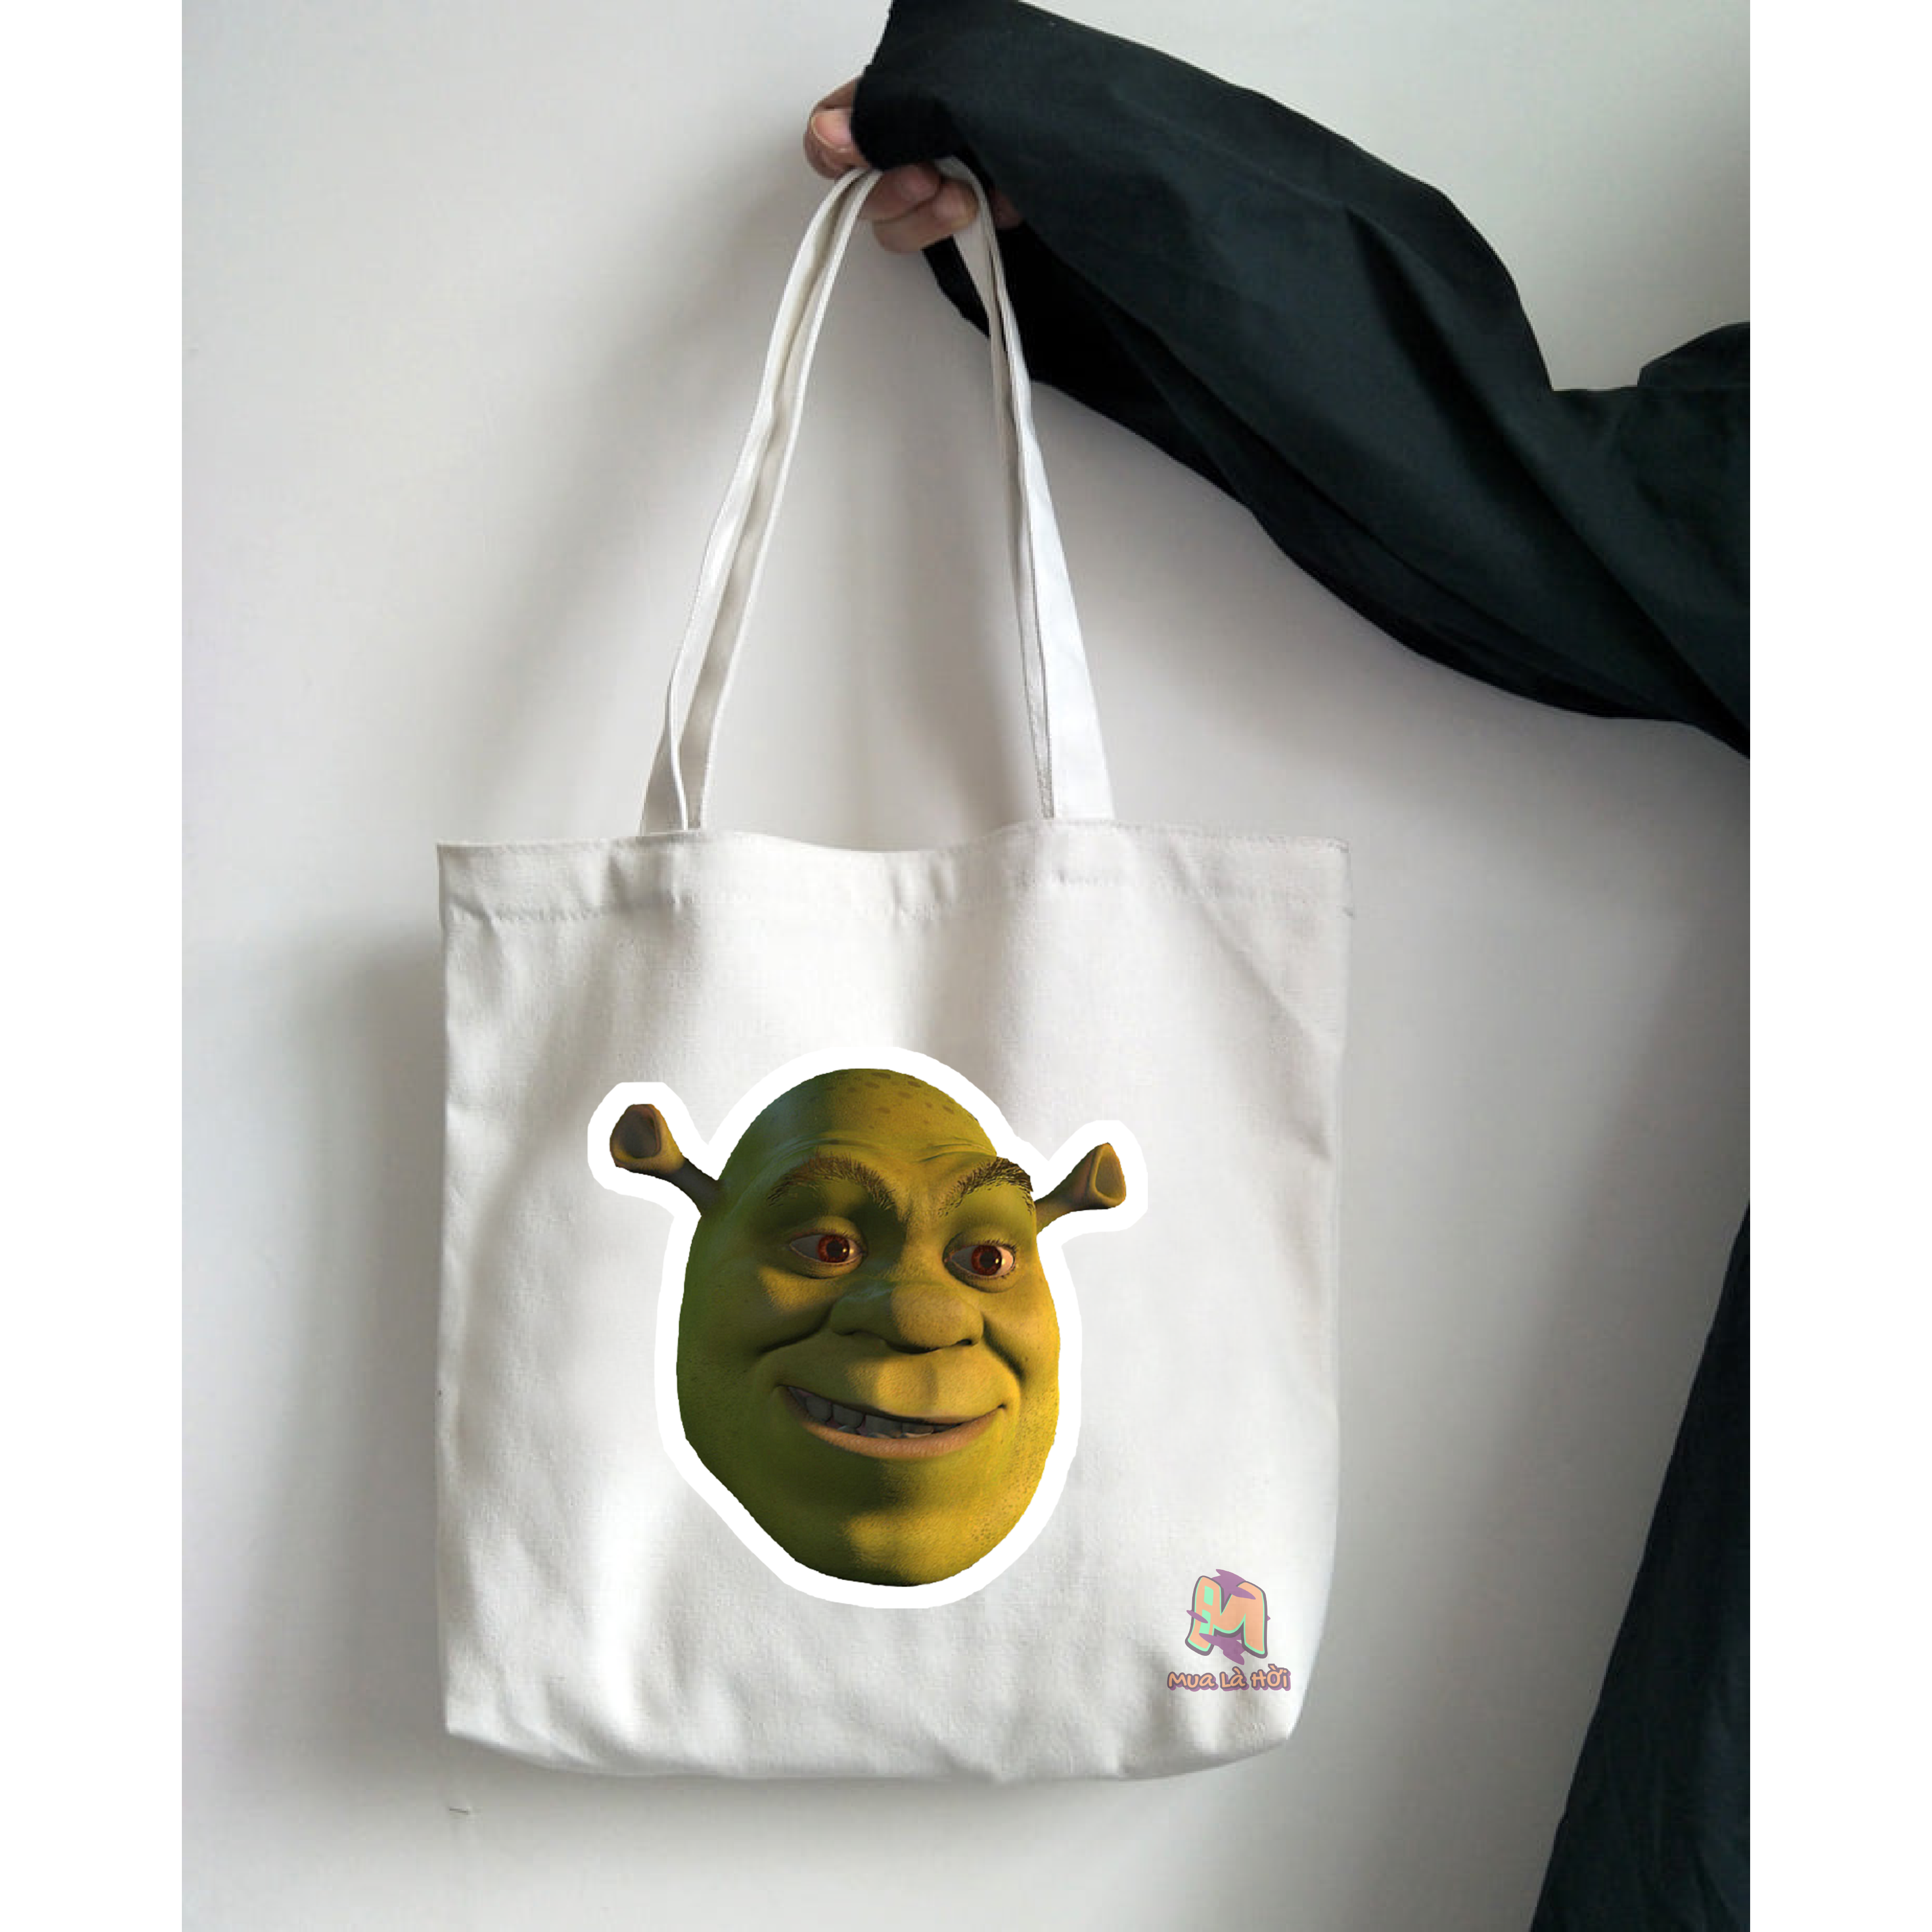 Túi Tote in hình chủ đề Shrek